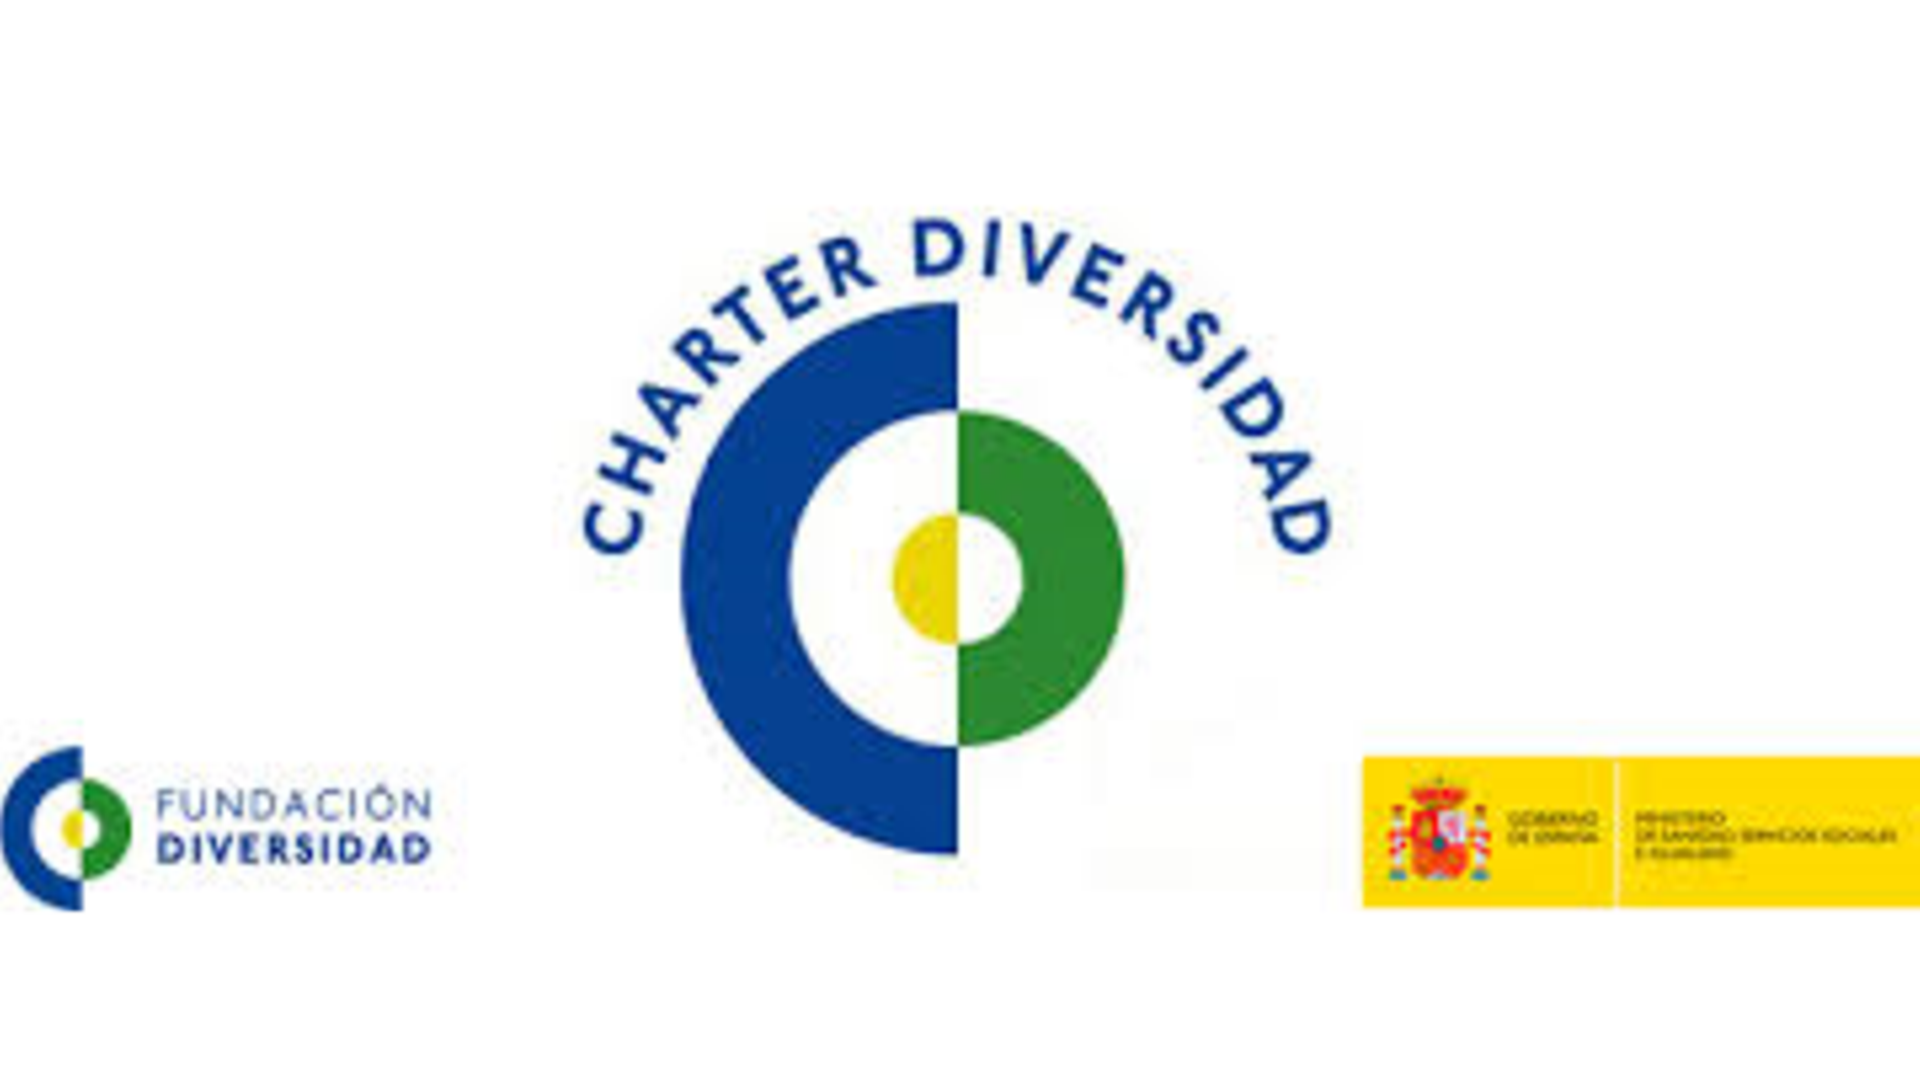 Charter de la Diversidad